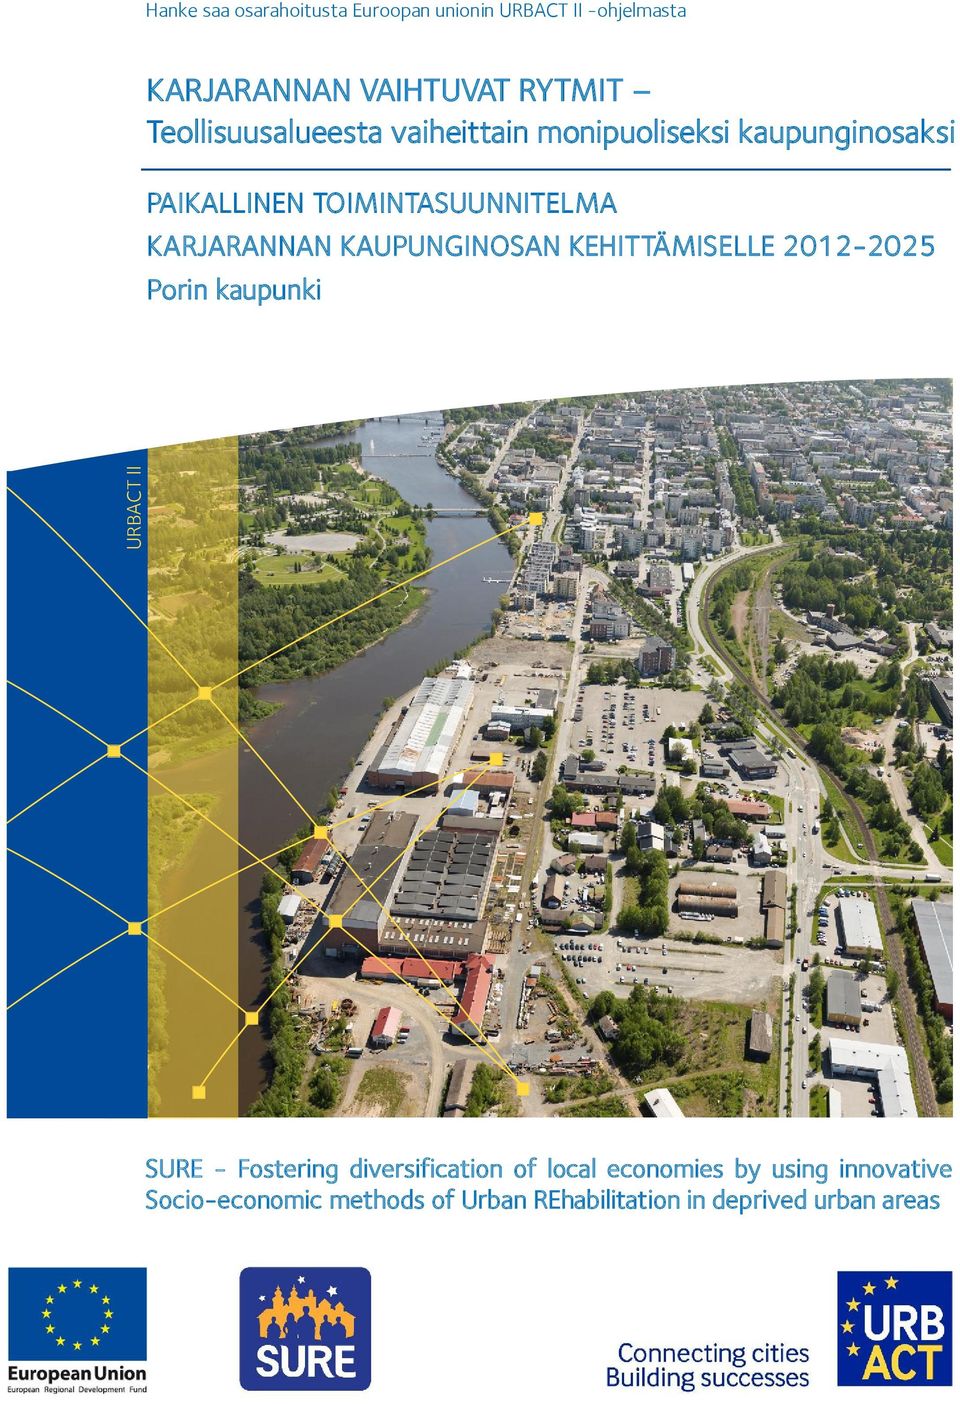 KARJARANNAN KAUPUNGINOSAN KEHITTÄMISELLE 2012-2025 Porin kaupunki URBACT II SURE - Fostering